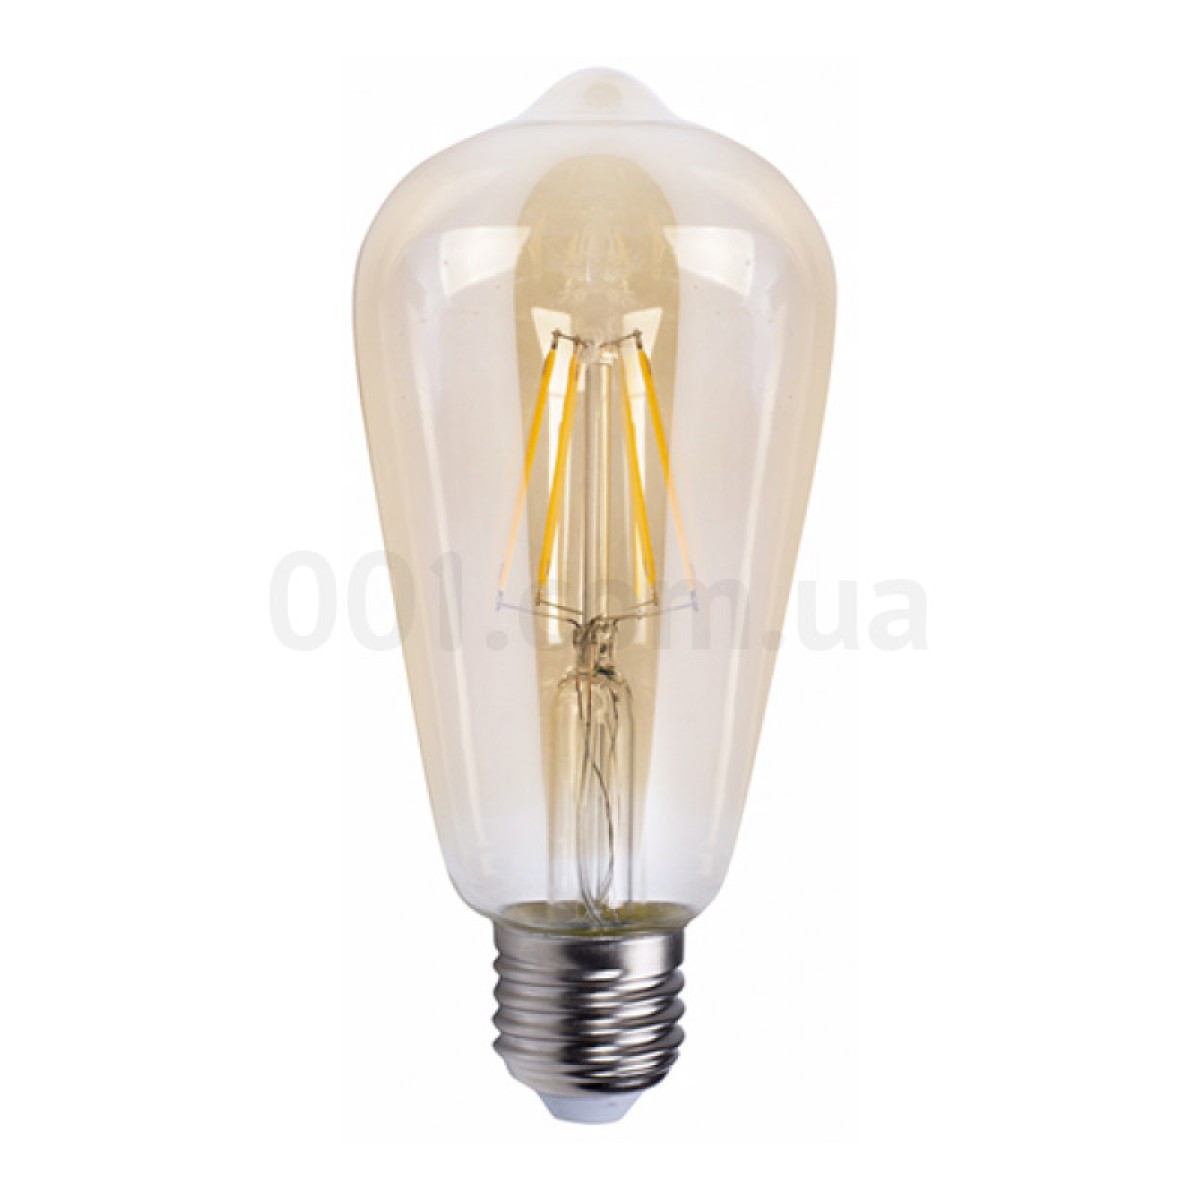 Светодиодная лампа LB-764 ST64 филамент золото 4Вт 2700K E27, Feron 98_98.jpg